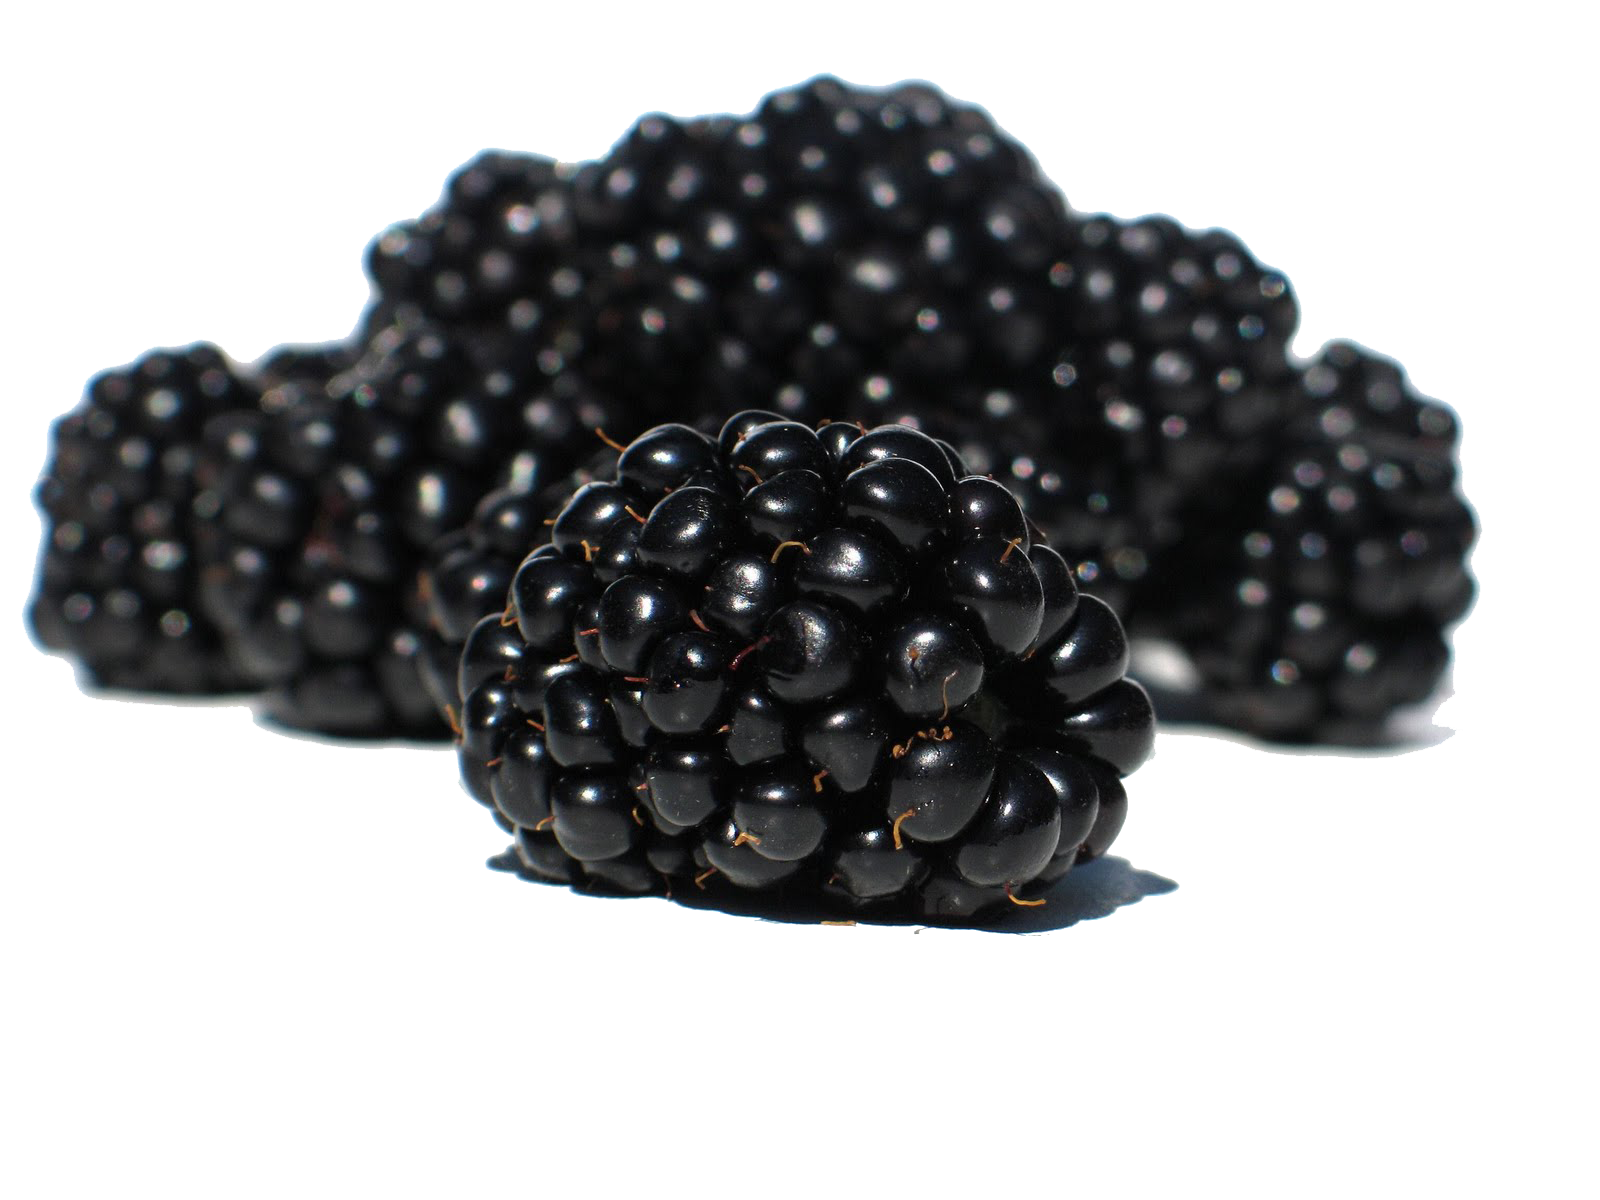 Blackberry Fruit Transparent Background